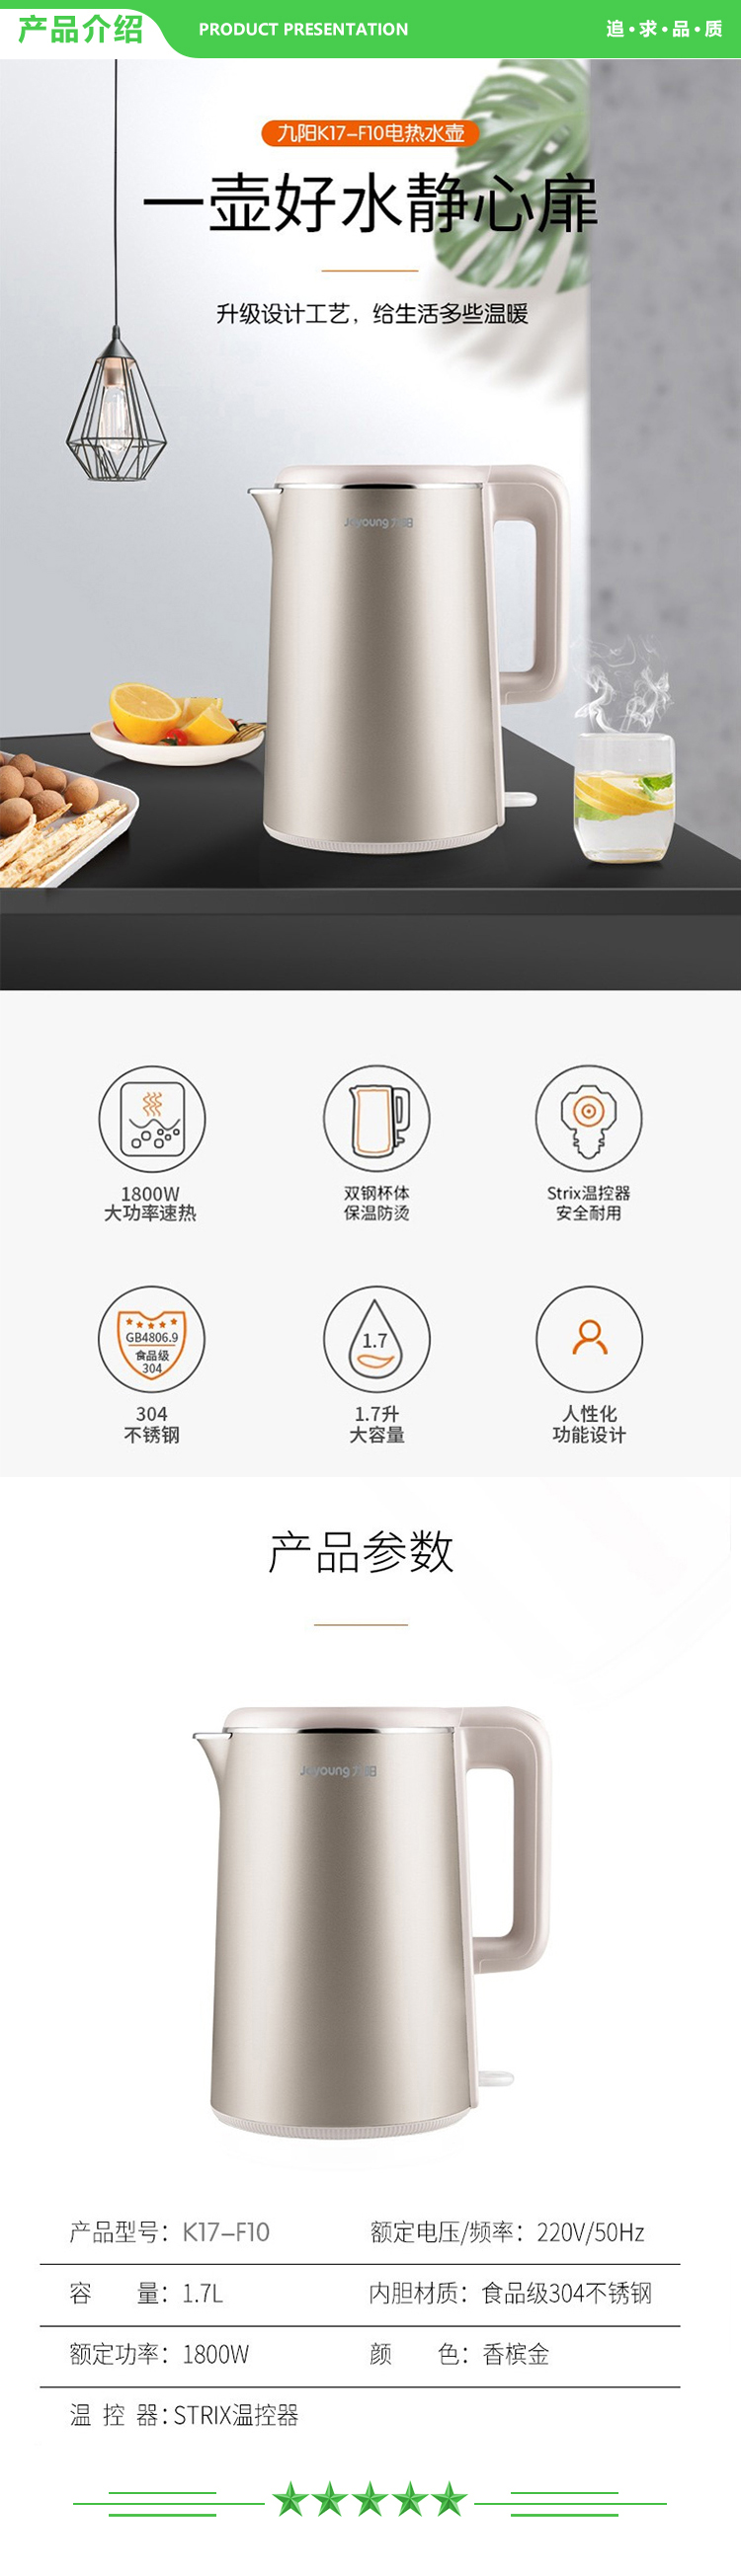 九阳 Joyoung K17-F10 电热水壶1.7升.jpg